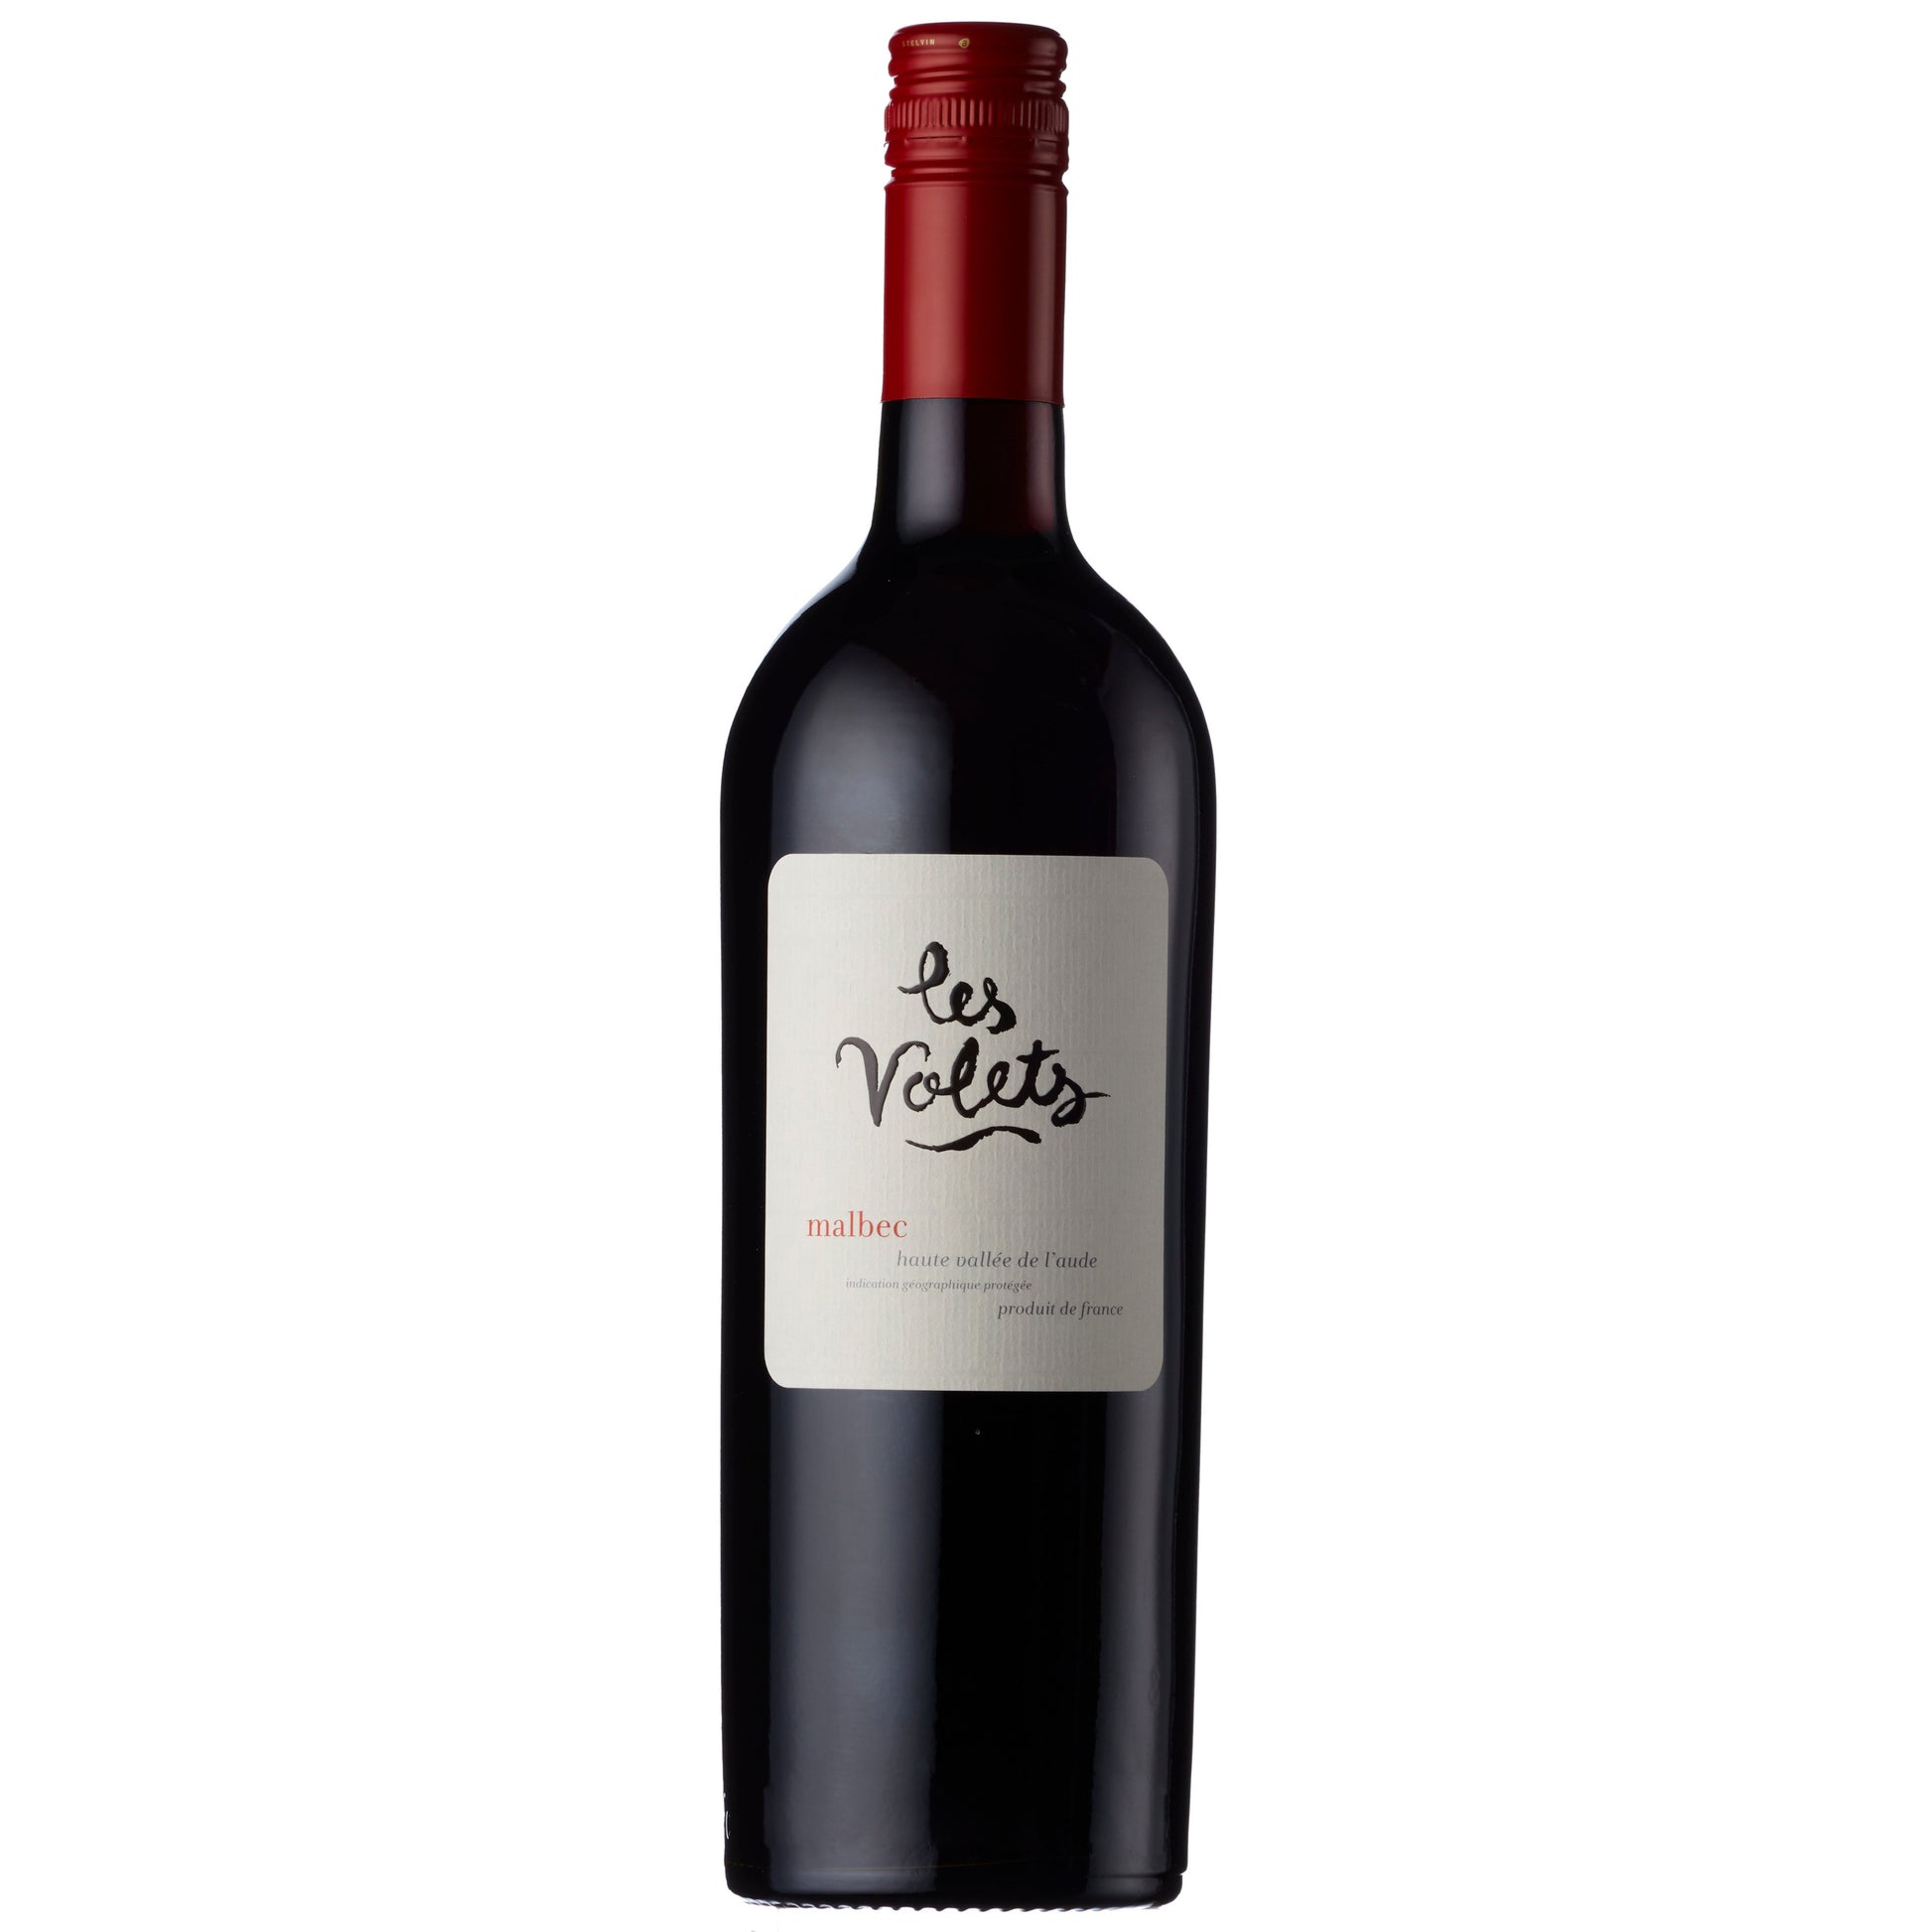 Les Volets Malbec, IGP Haute Vallée de l’Aude-Red Wine-3430560003567-Fountainhall Wines